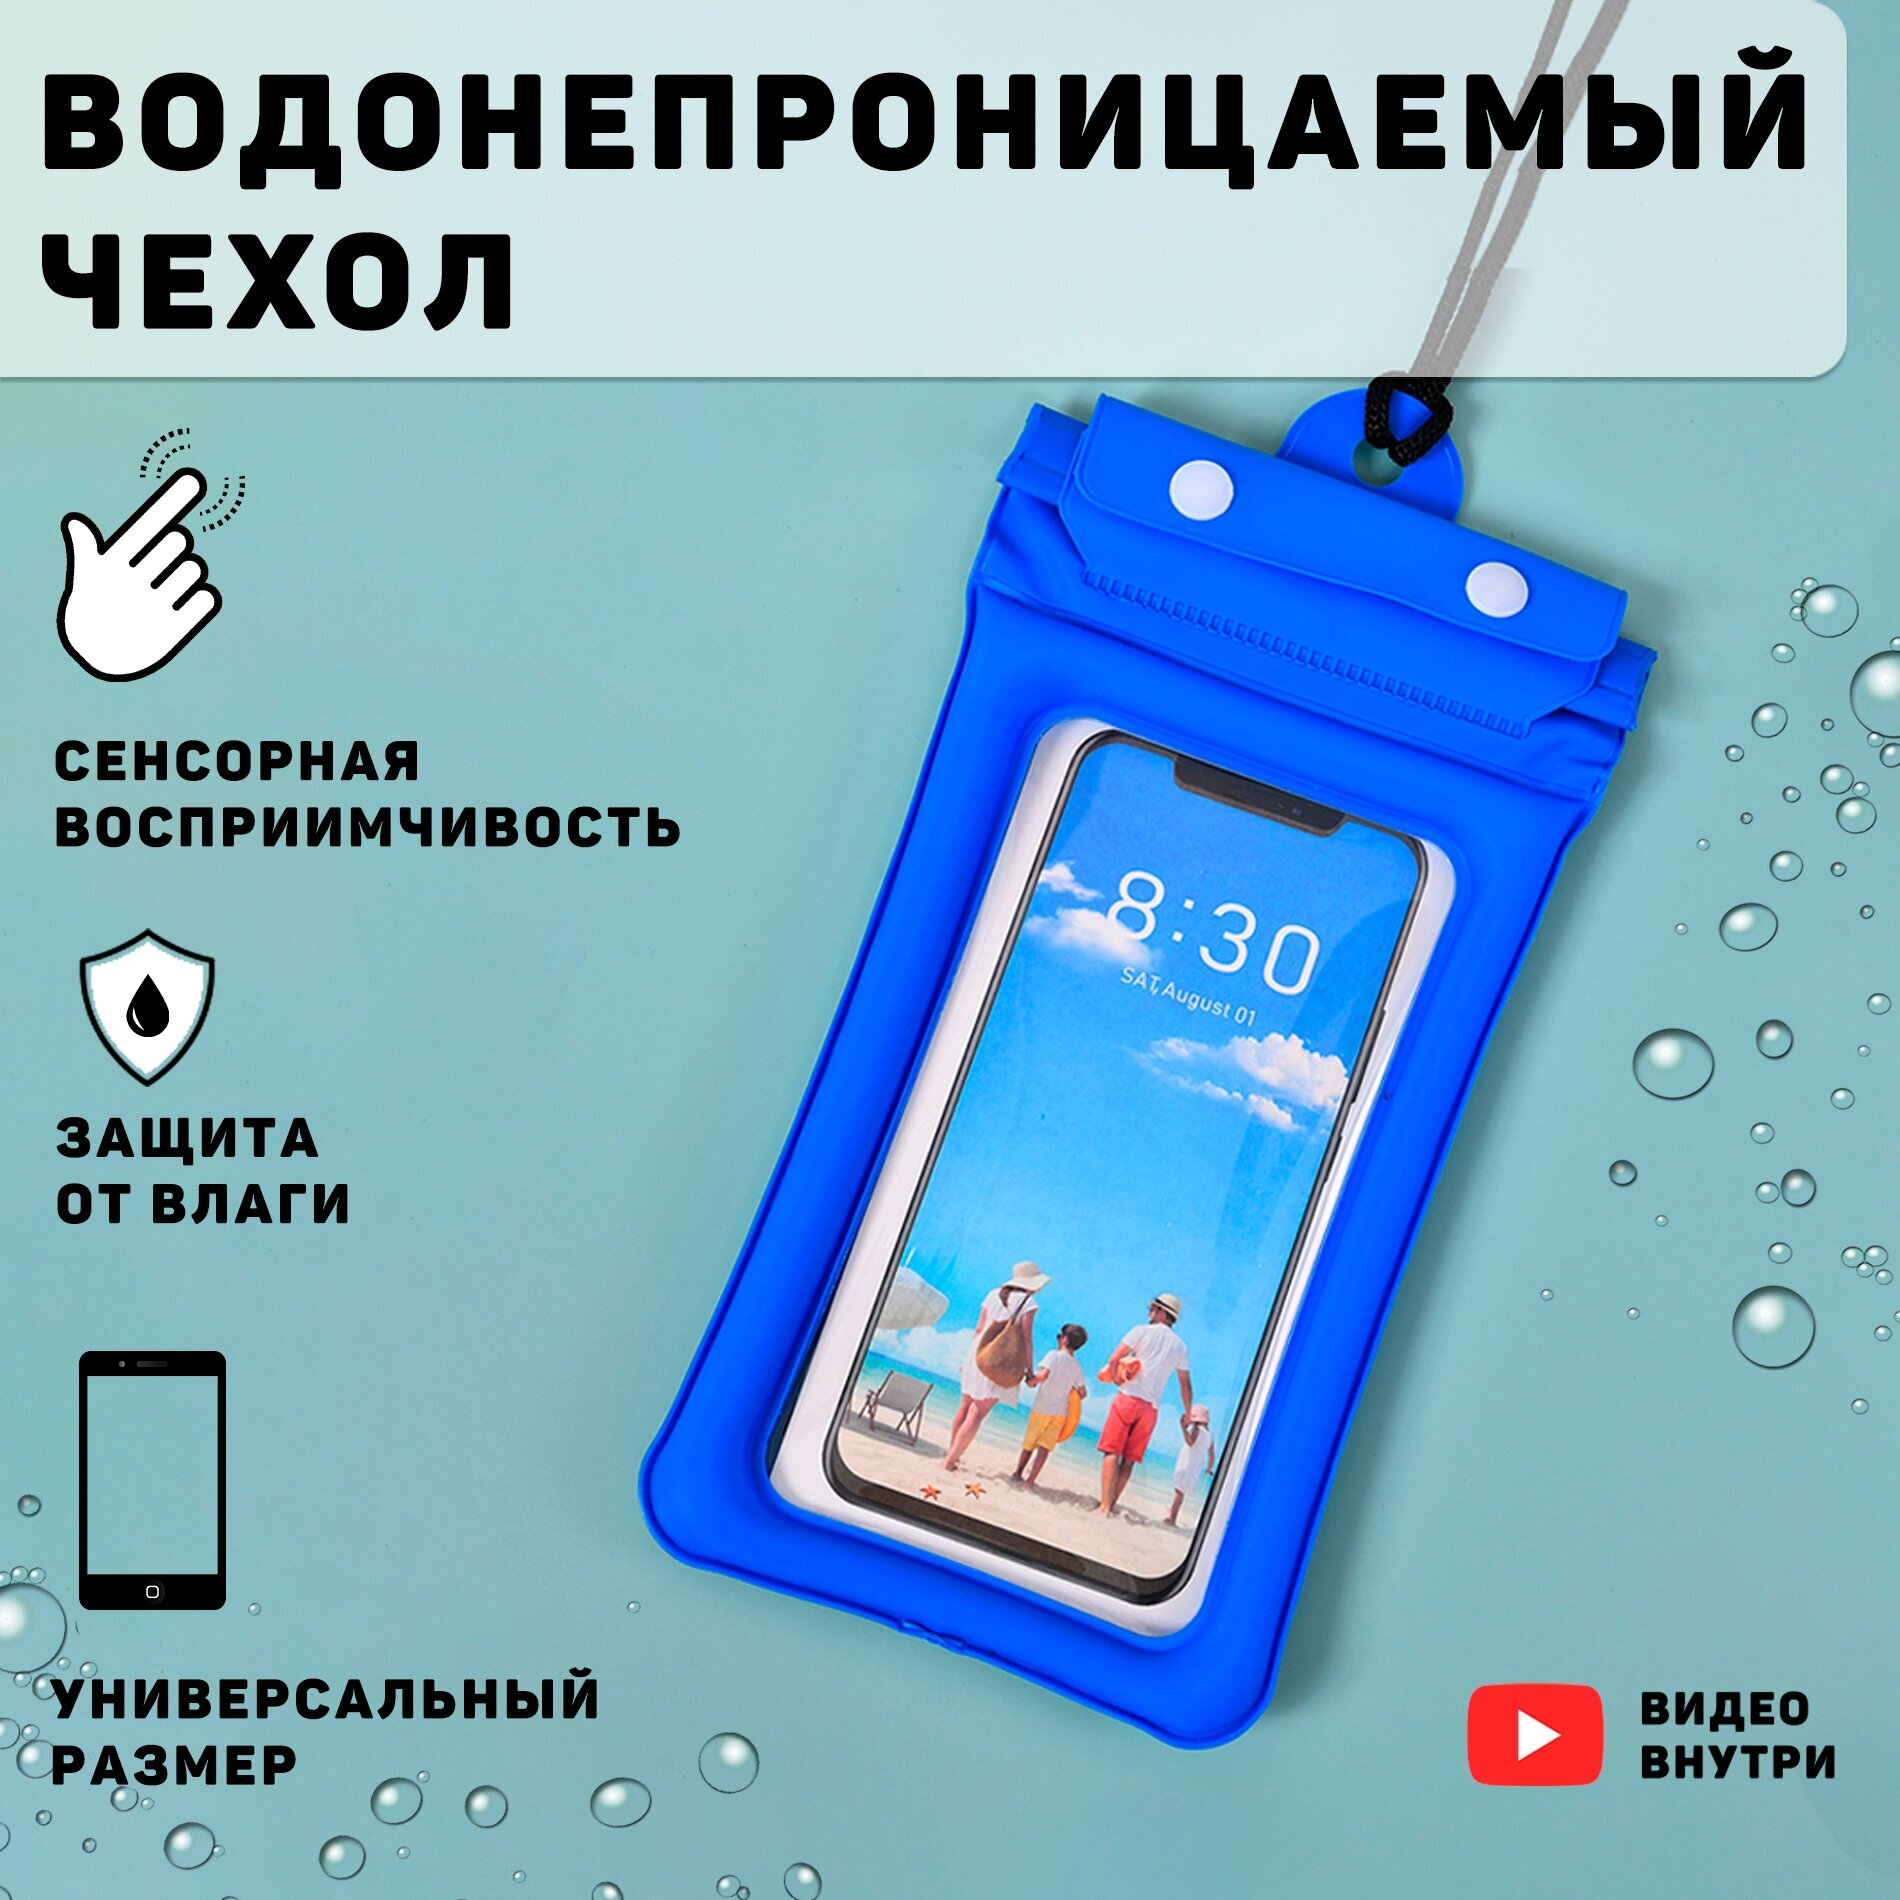 Чехол для телефона, документов, ключей водонепронецаемый ( синий), сумка, Для подводной съемки.